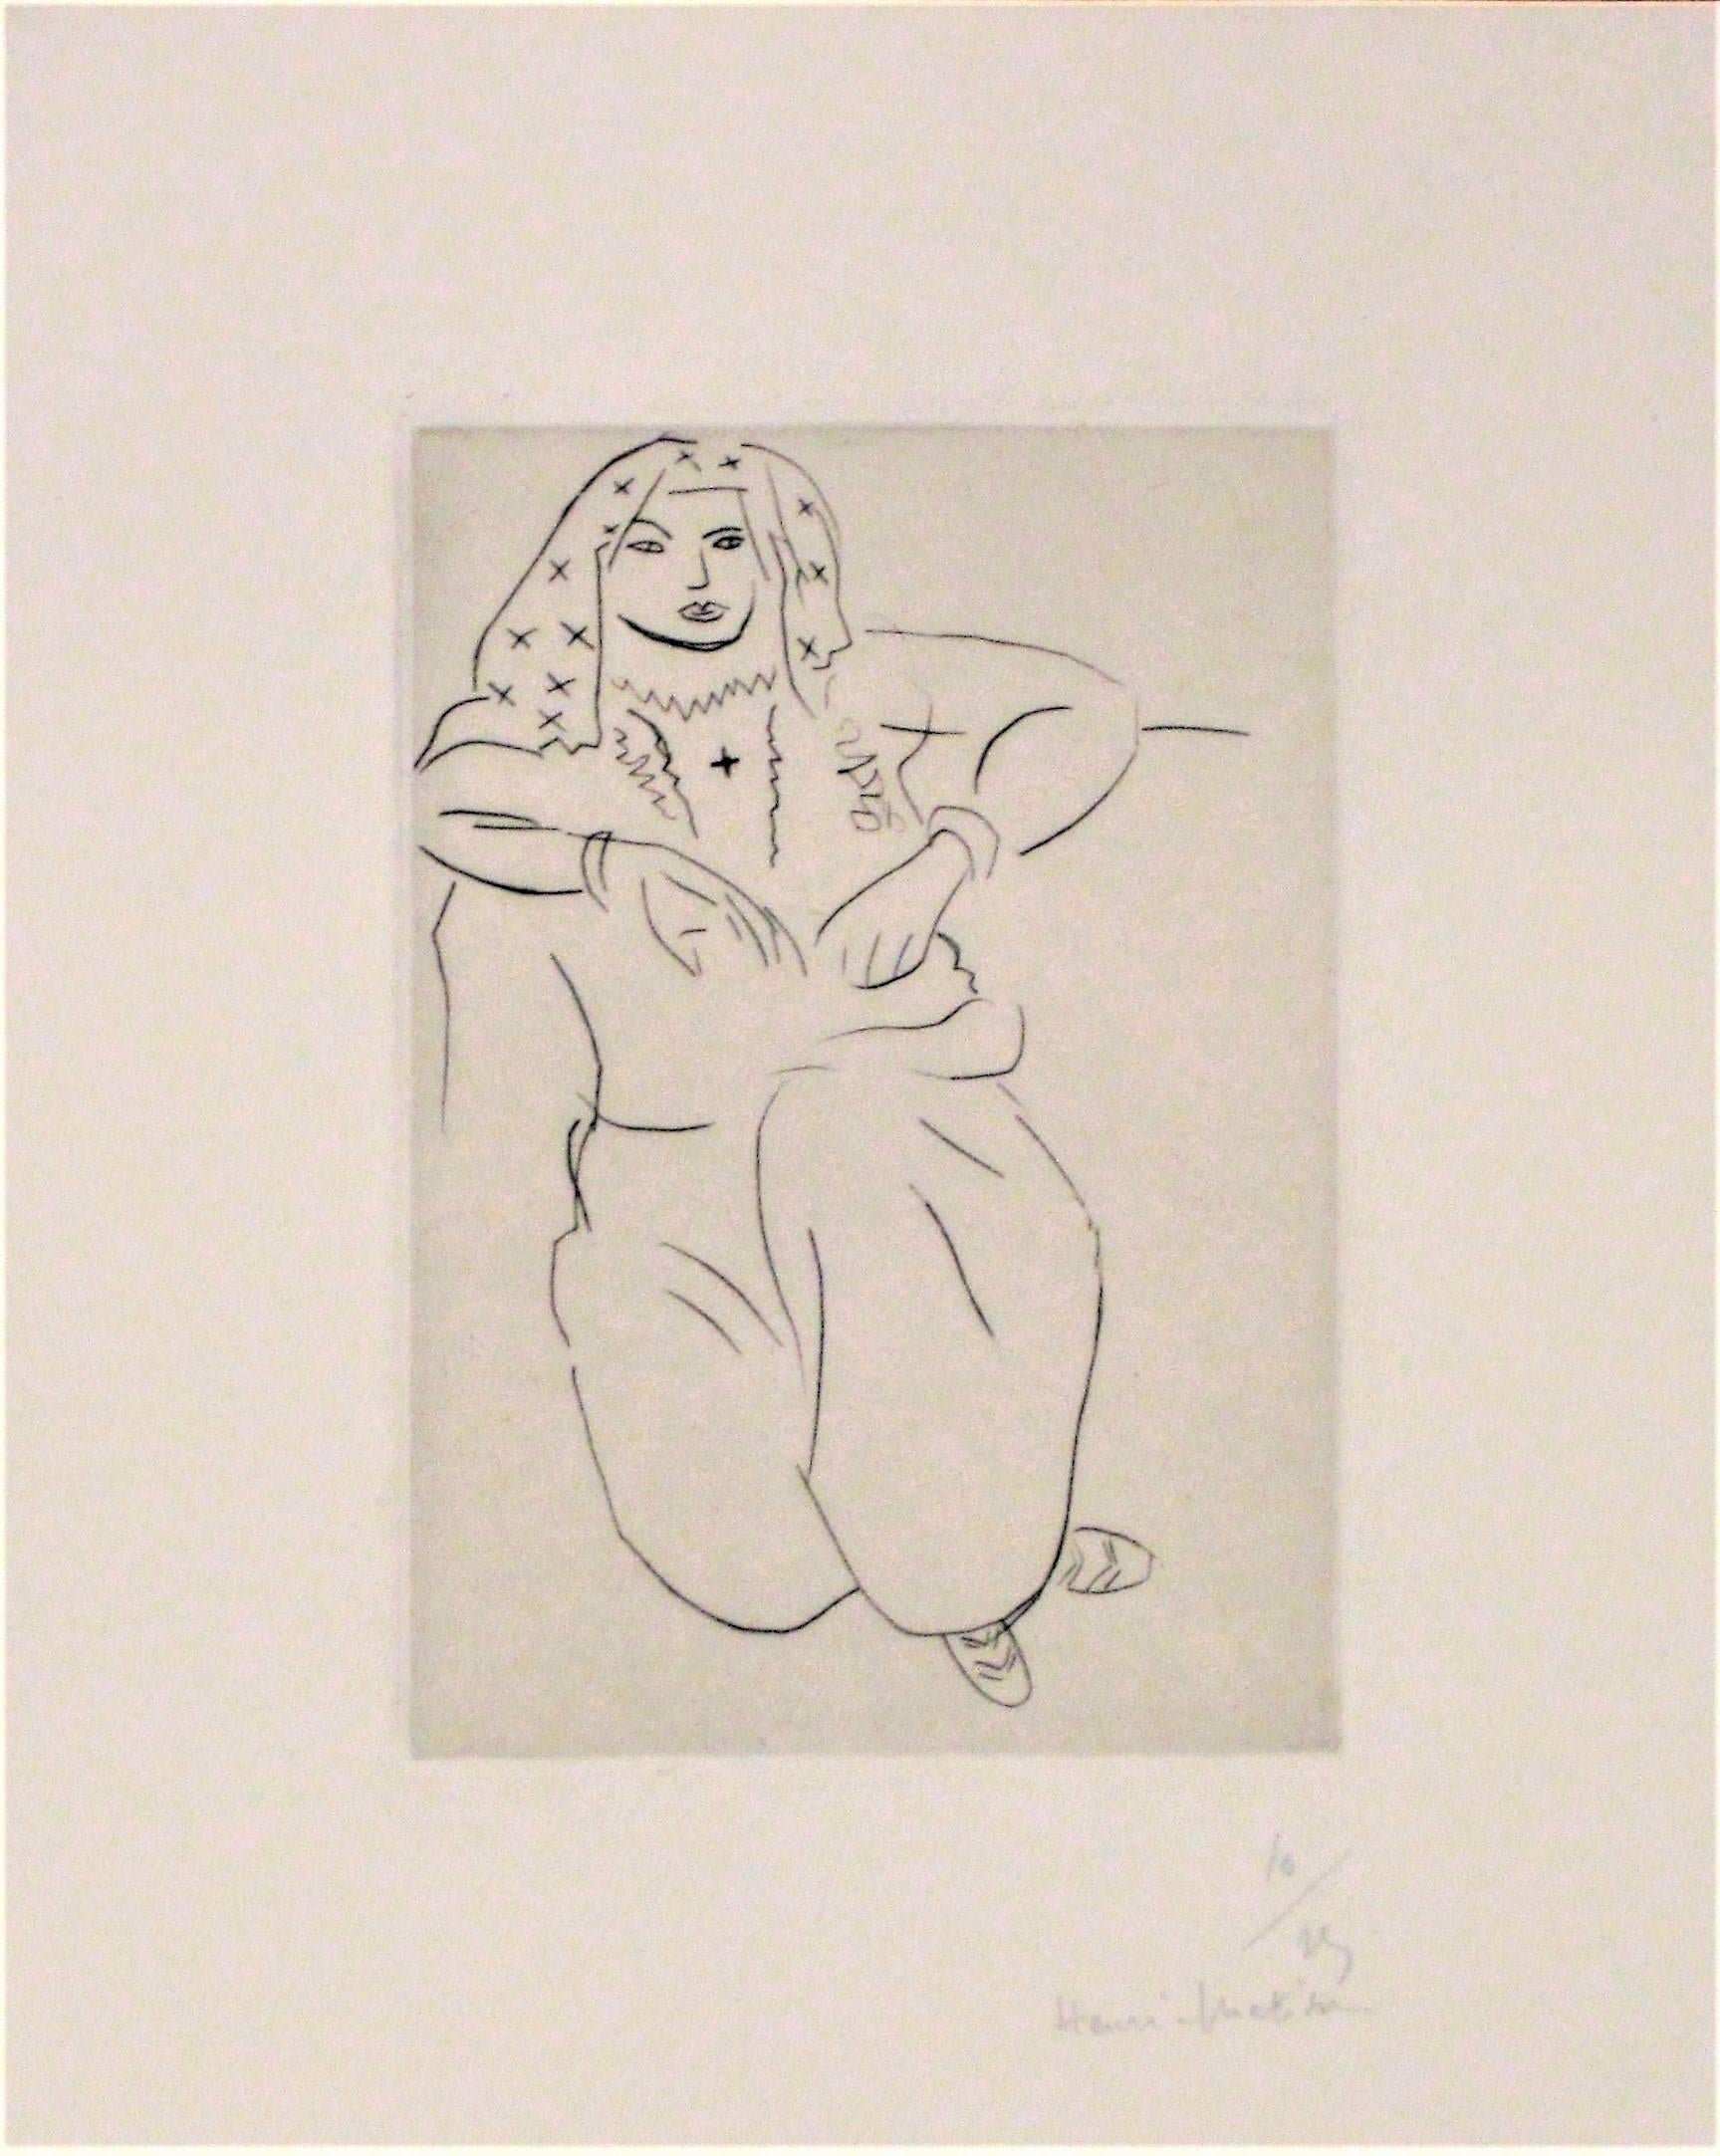 Orientale Assise, Voile sur la Tête - Print by Henri Matisse